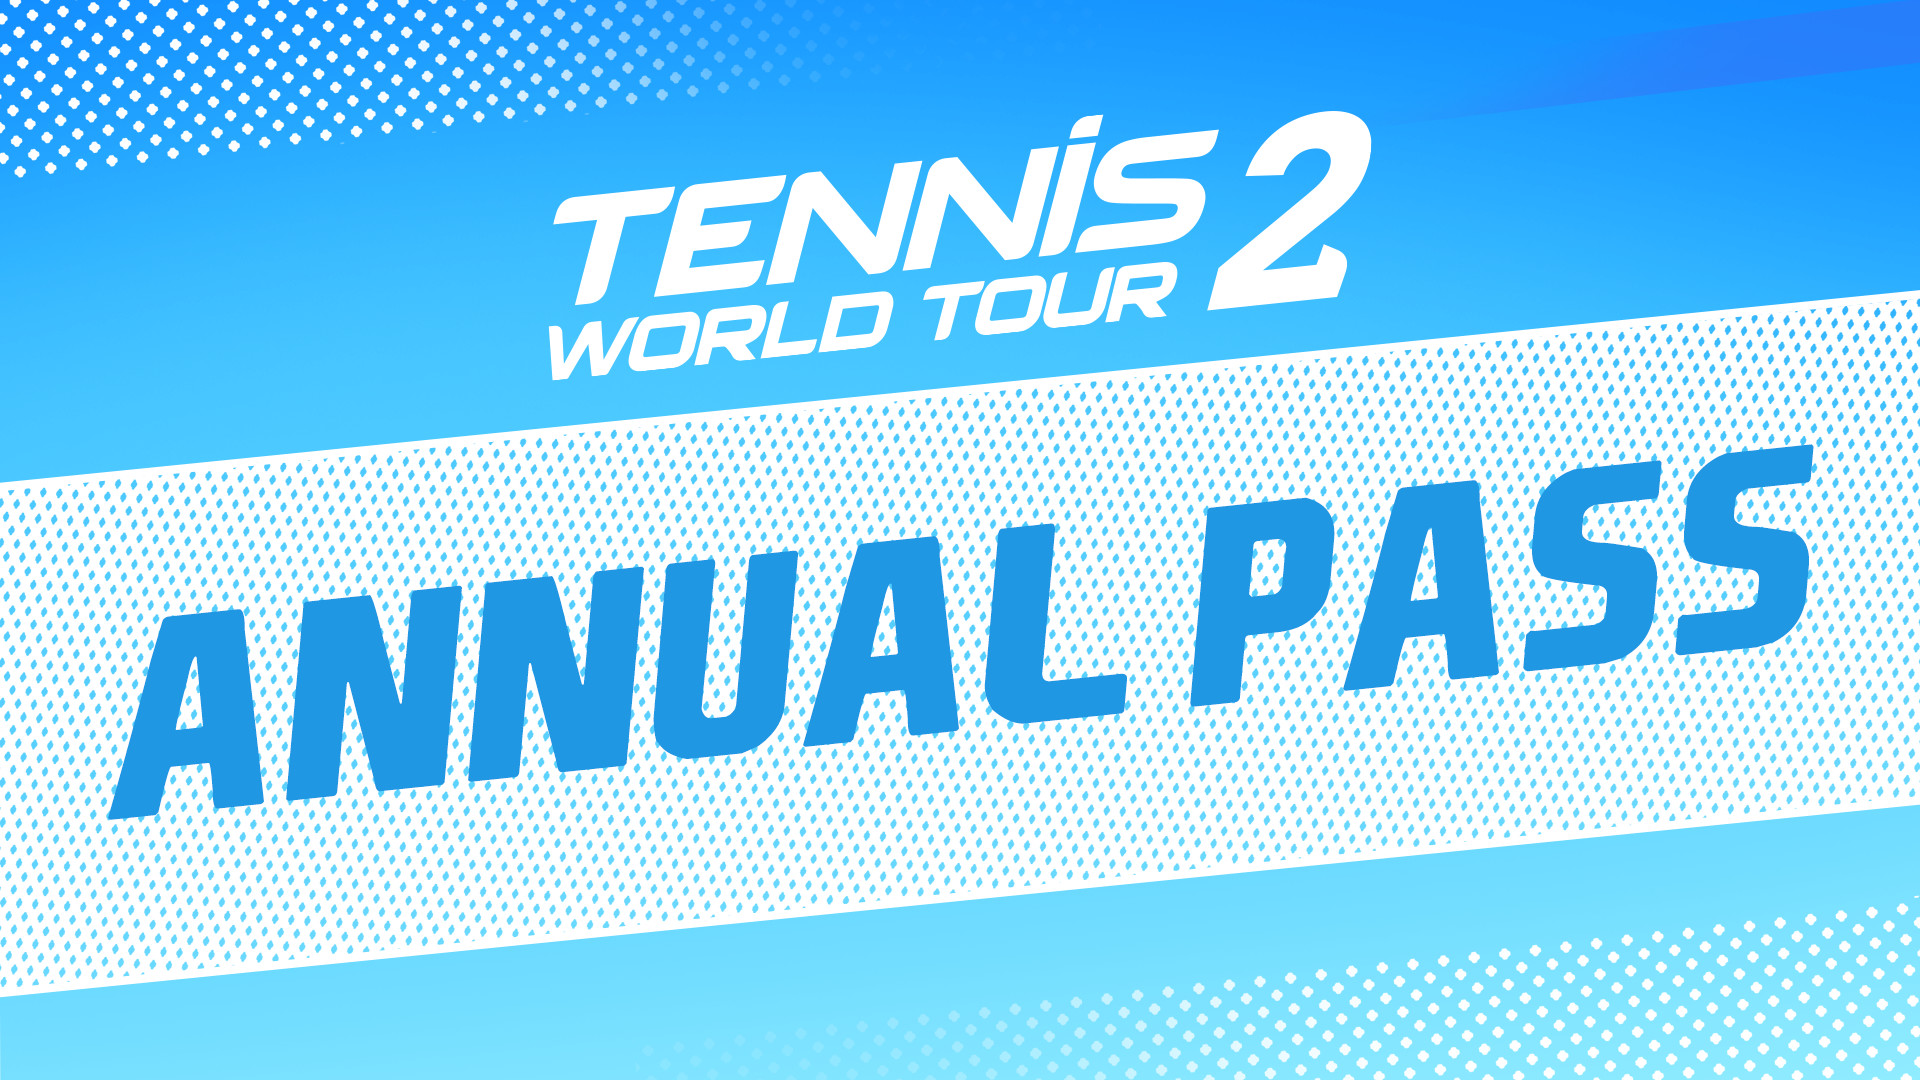 Tennis World Tour 2 - Annual Pass DLC Steam CD Key [$ 7.23]